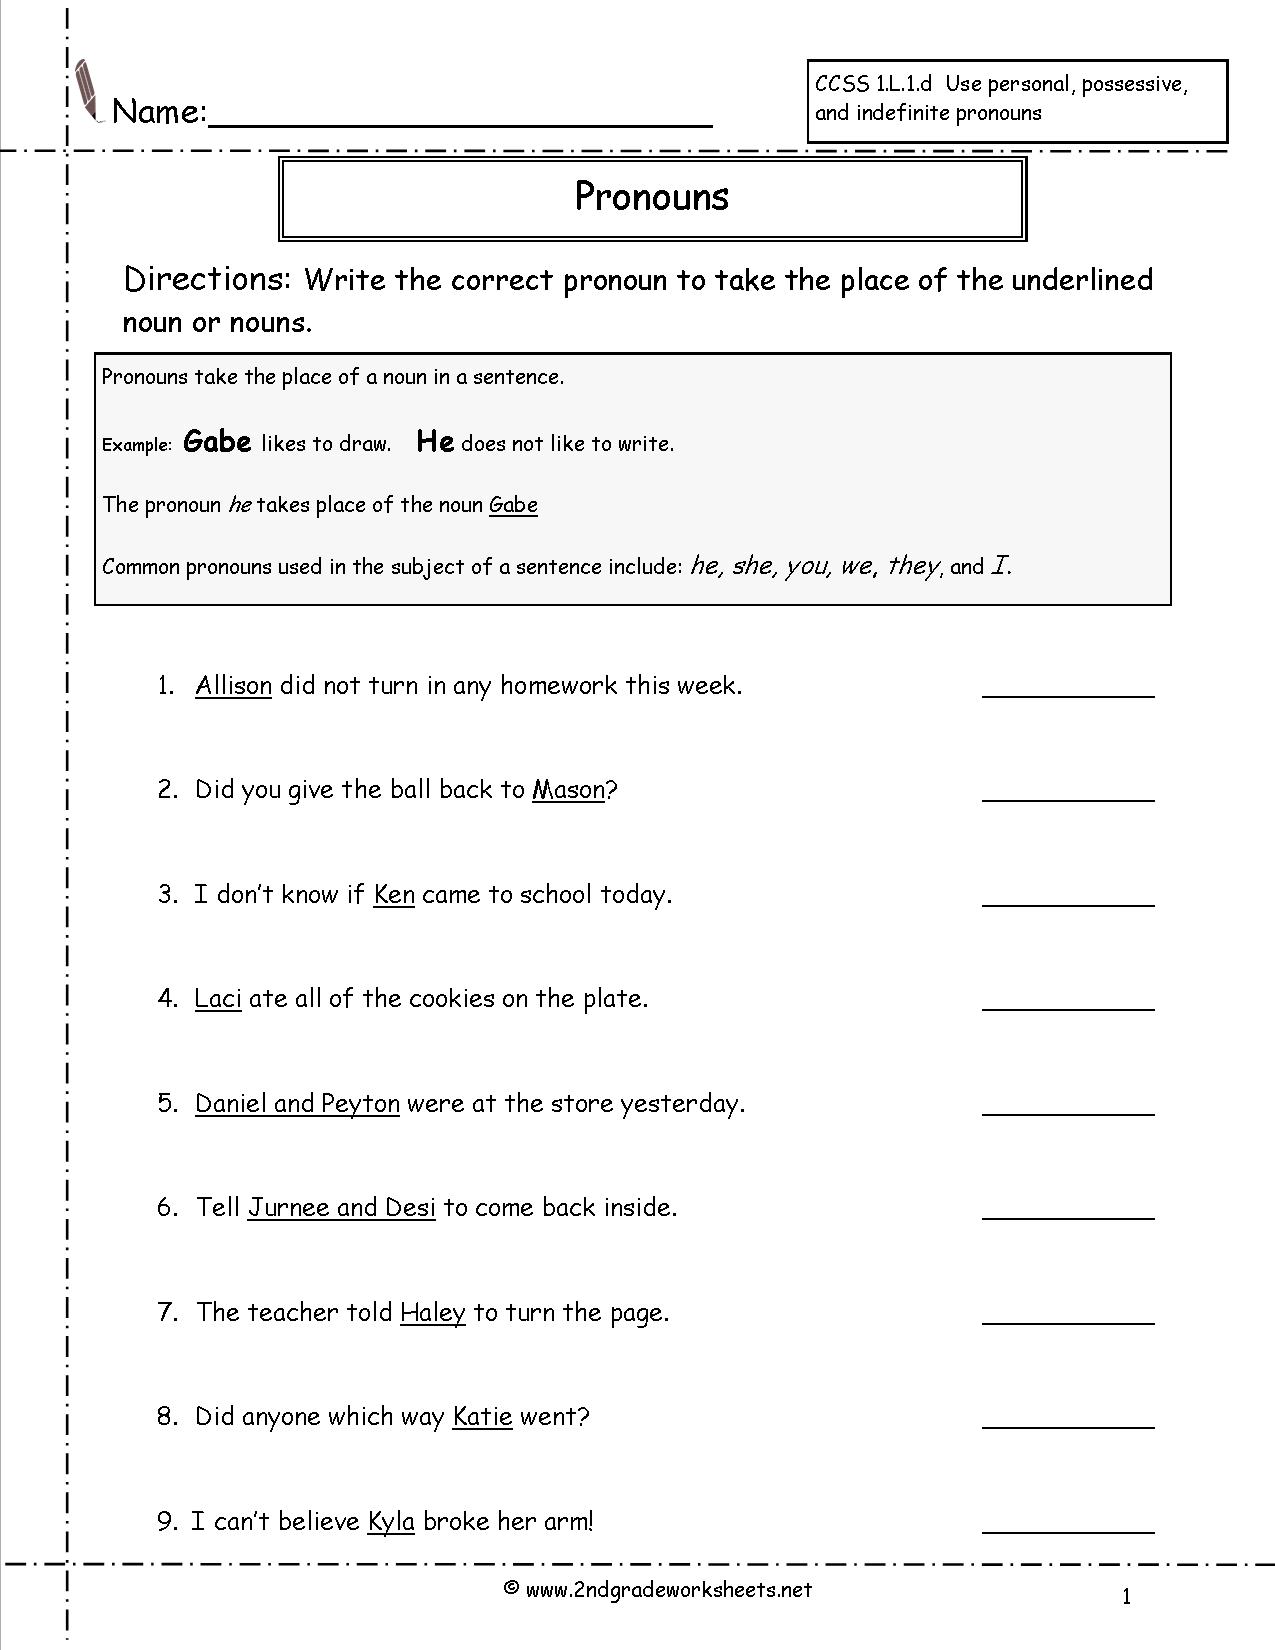 worksheet-1st-grade-personal-pronouns-pronoun-worksheets-pronouns-grade-worksheet-printable